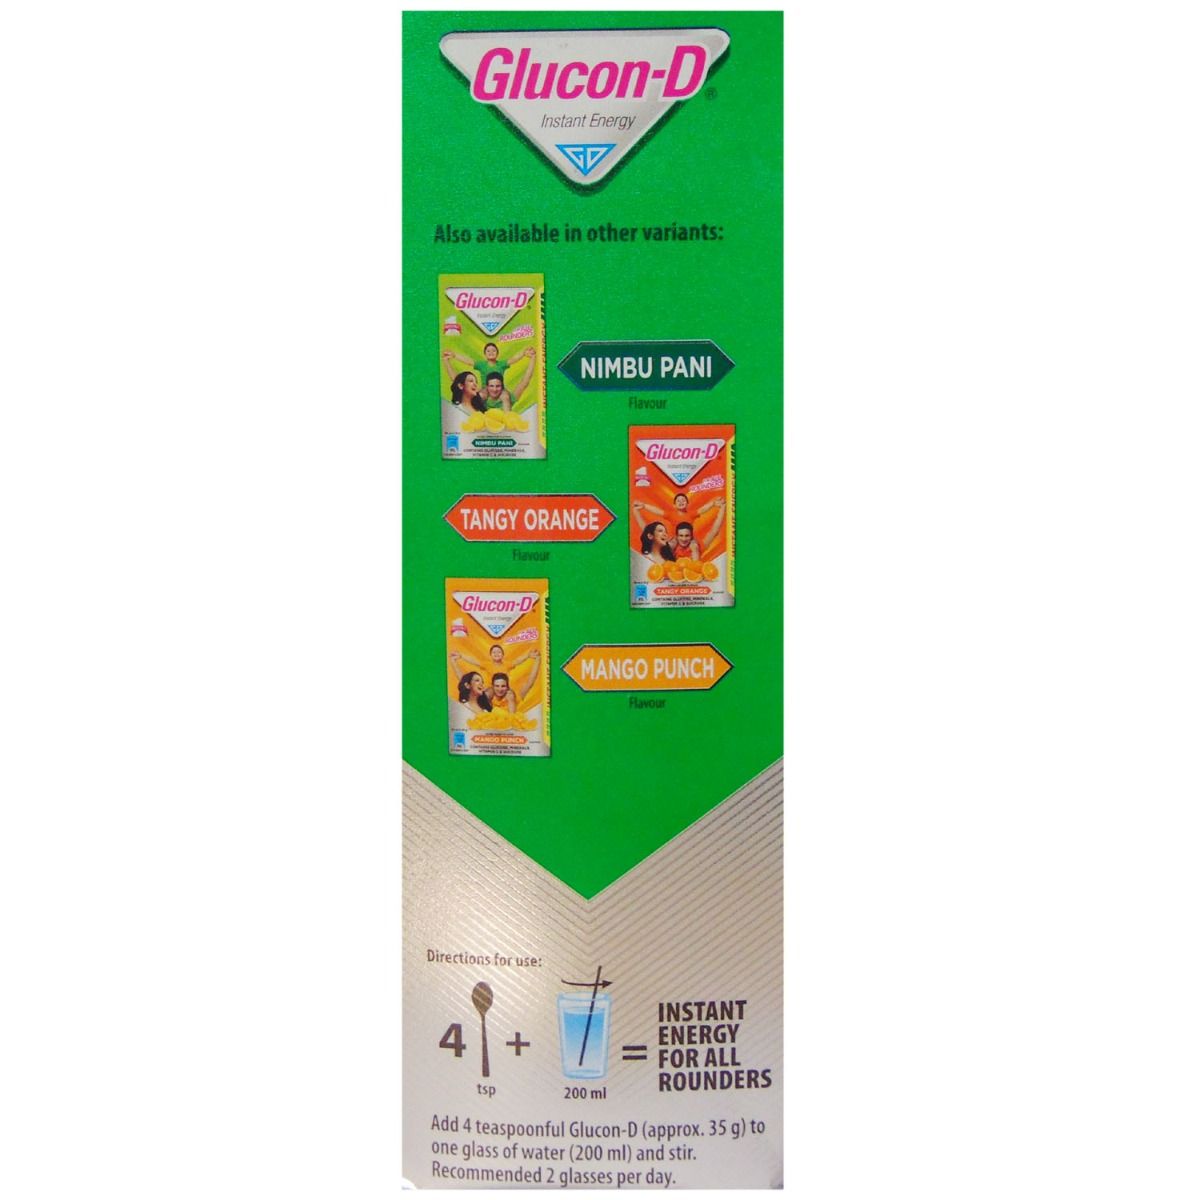 Glucon-D Regular Instant Energy Drink, 1 kg Refill Pack, Pack of 1 